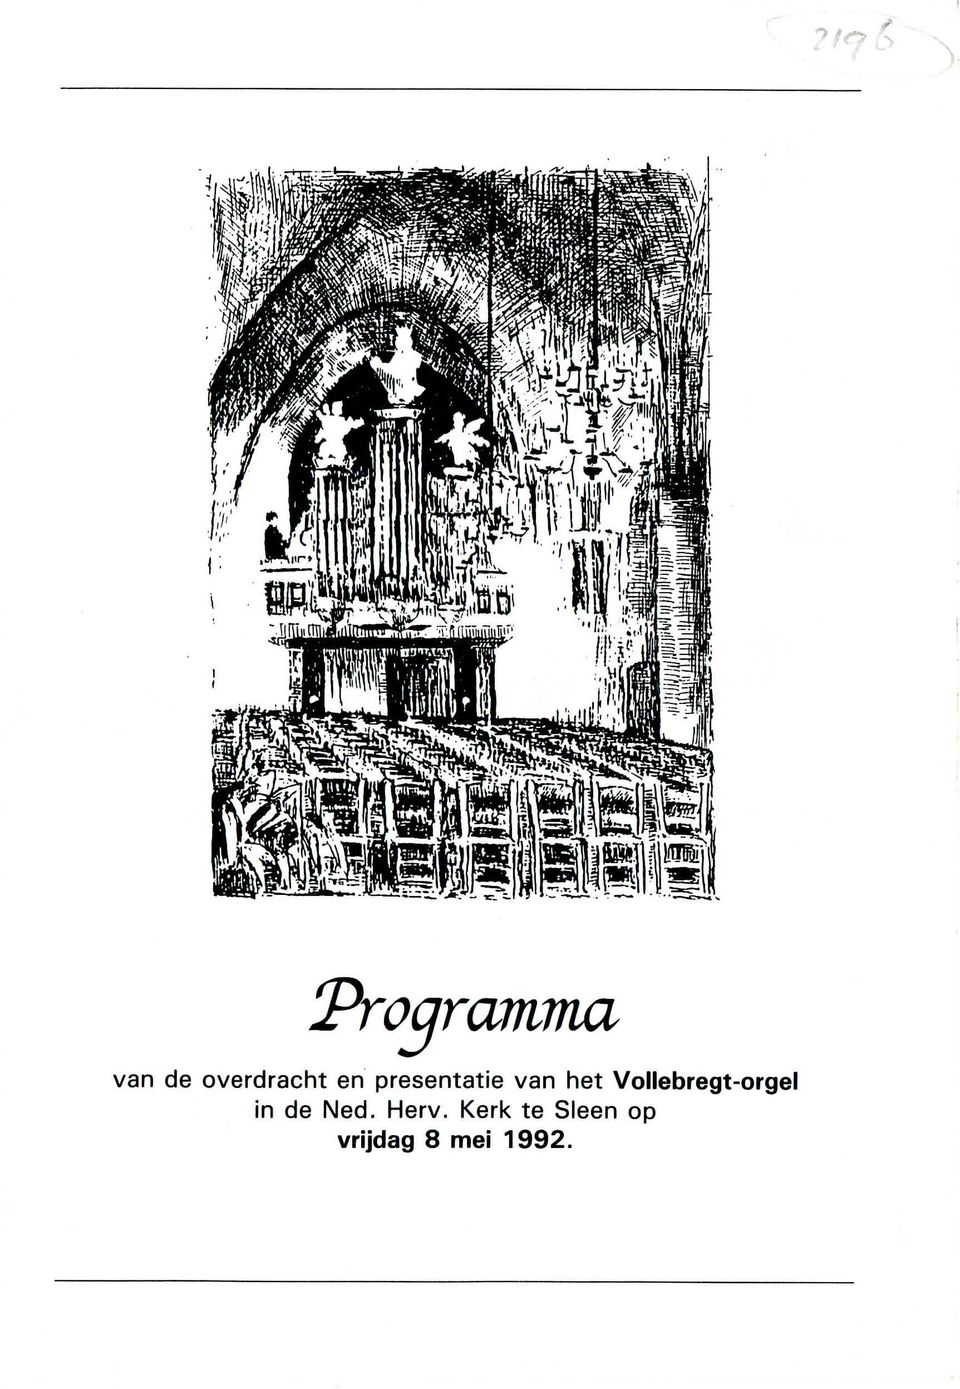 Vollebregt-orgel in de Ned.